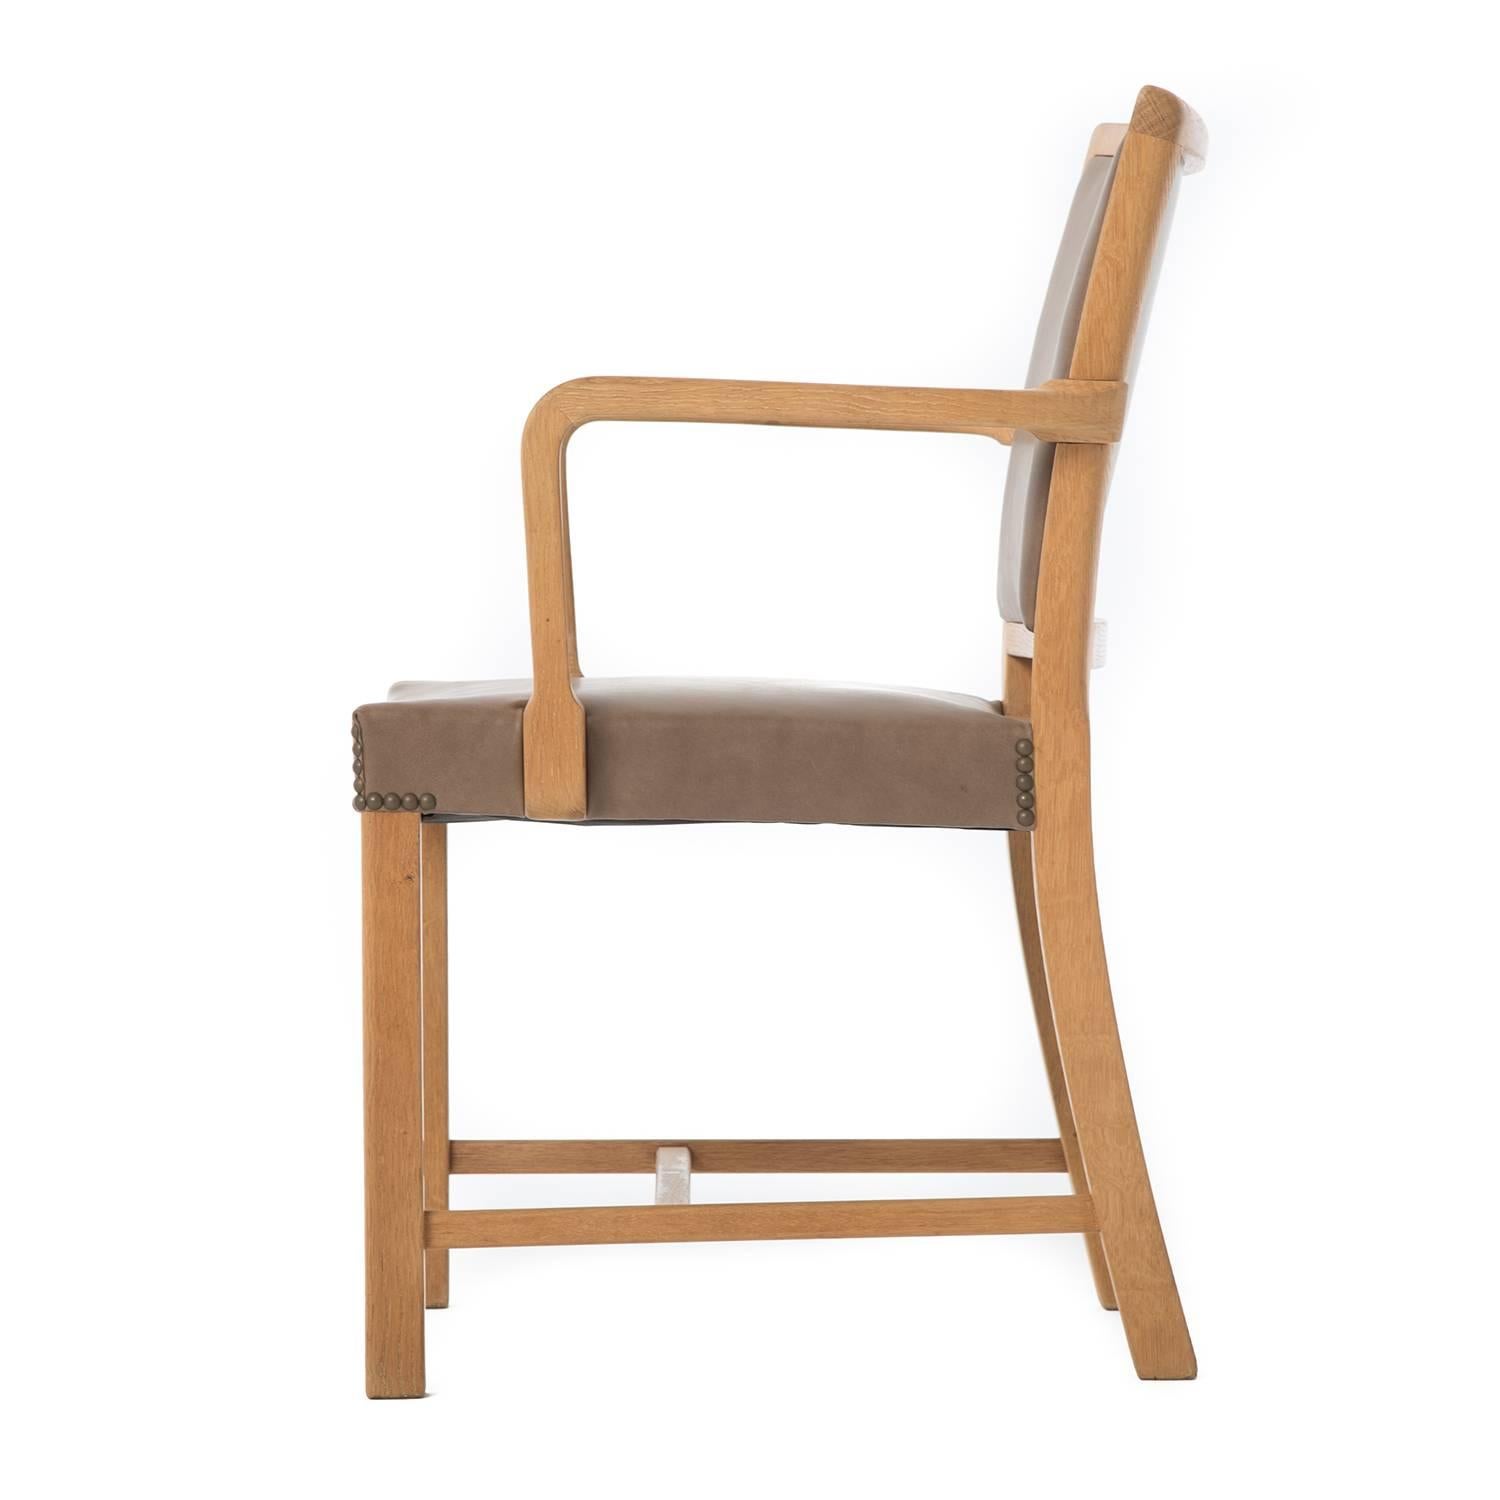 Ein älterer und traditioneller Beistellstuhl aus Weißeiche und Leder. Neu restauriert und in ausgezeichnetem Zustand. Entwurf von Mogens Koch. 

Die professionelle und fachgerechte Restaurierung von Möbeln ist ein fester Bestandteil unserer